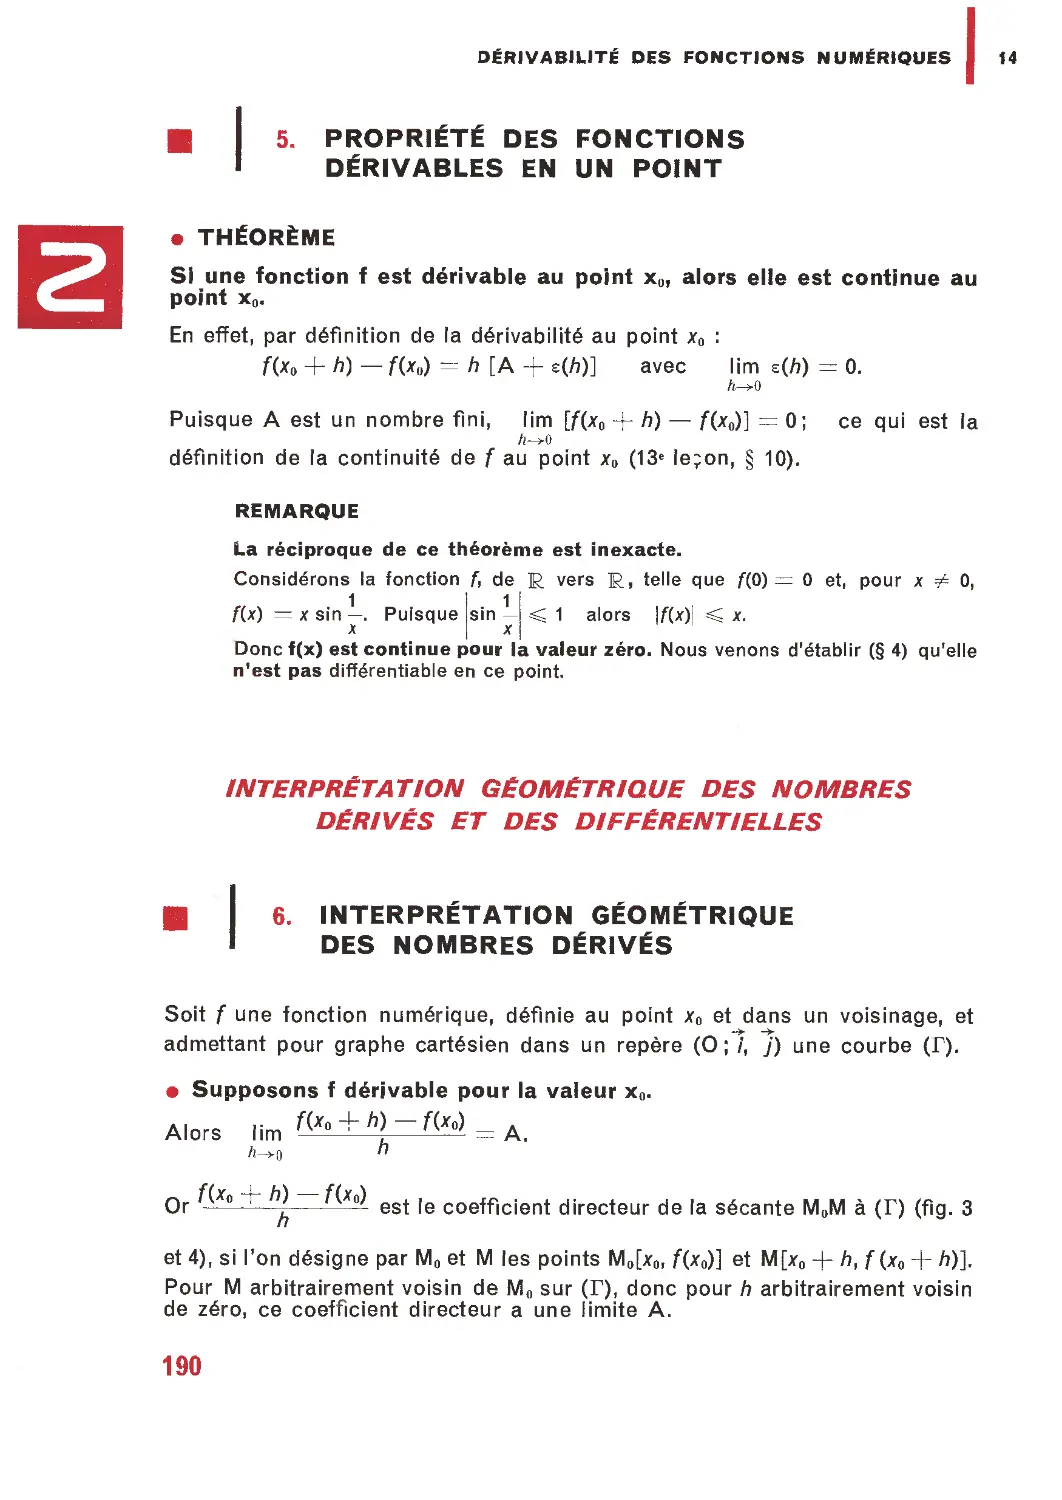 5. Propriété des fonctions dérivables en un point
Interprétation géométrique des nombres dérivés et des différentielless